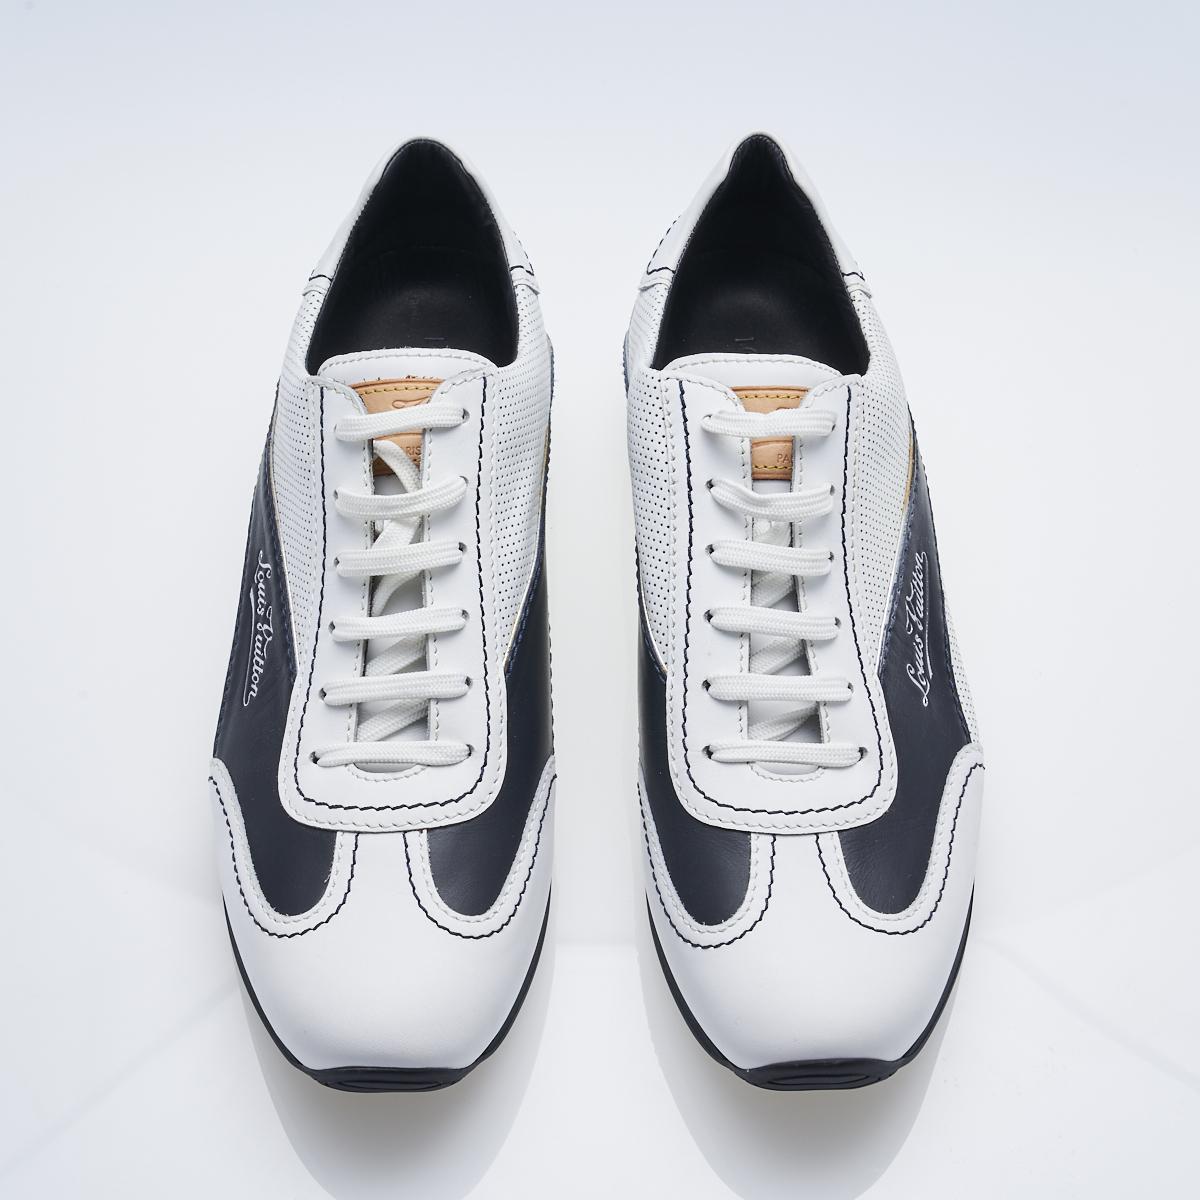 Louis Vuitton Tennis Shoes - Price Estimate: $330 - $500